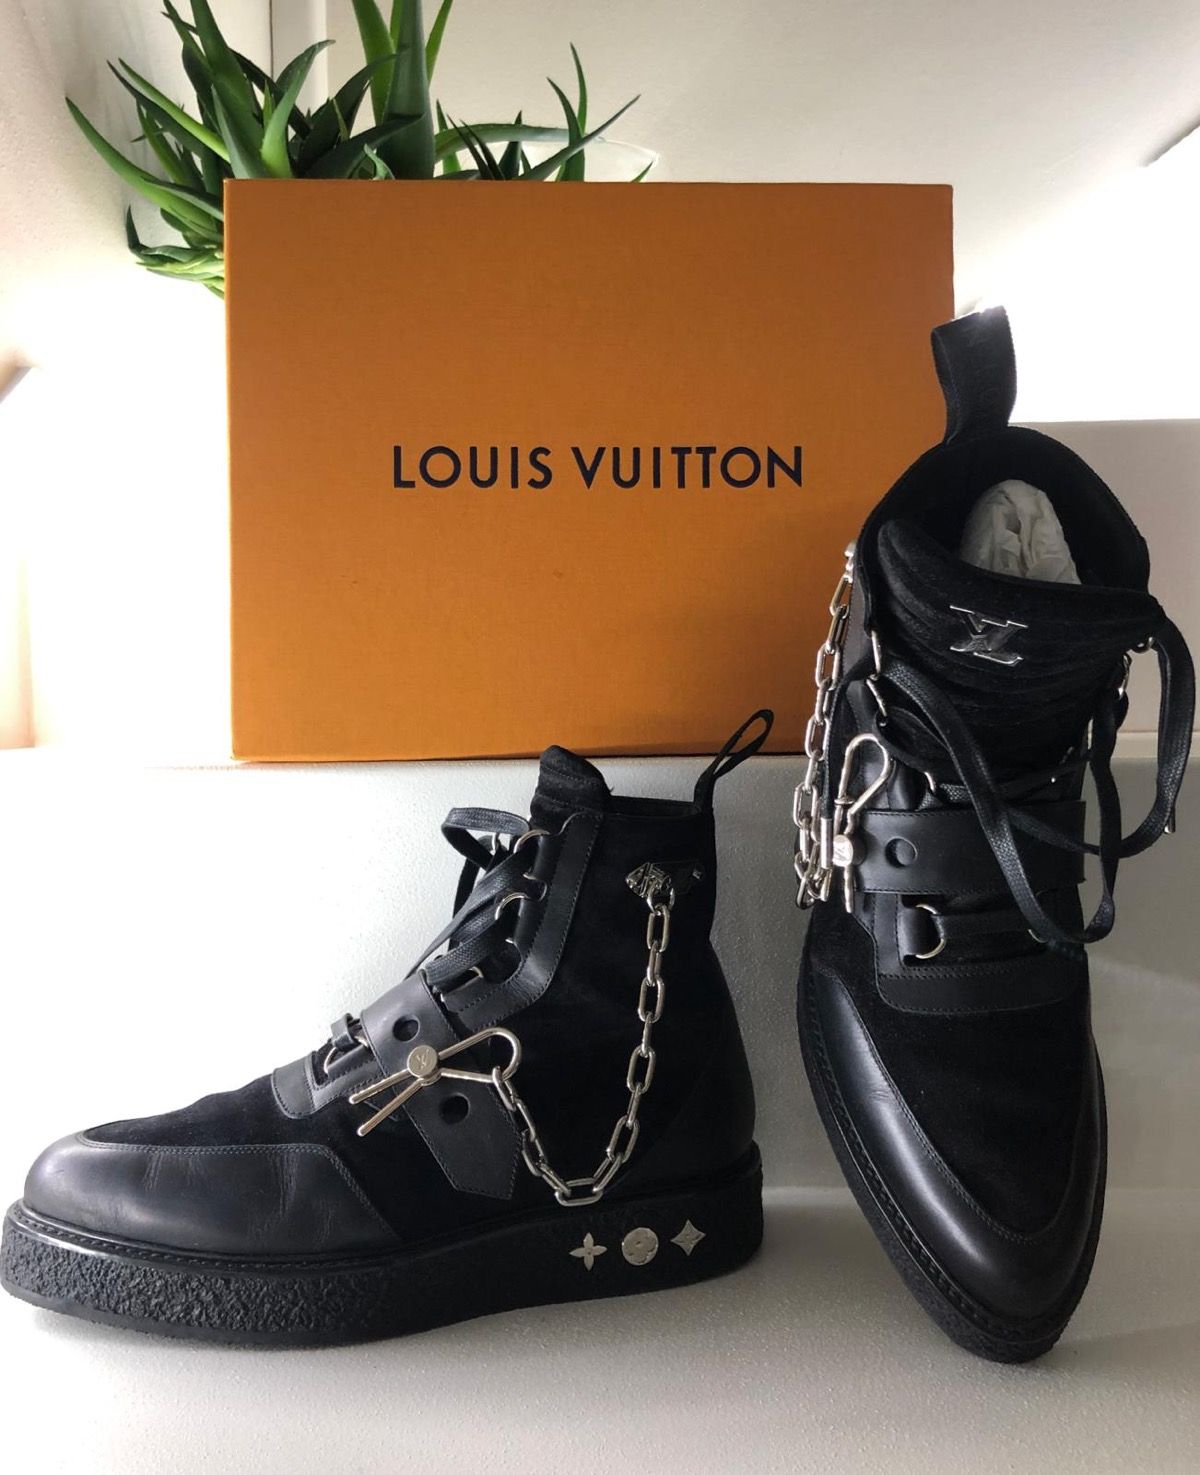 Louis Vuitton Louis vuitton Virgil Abloh Creeper Ankle boot